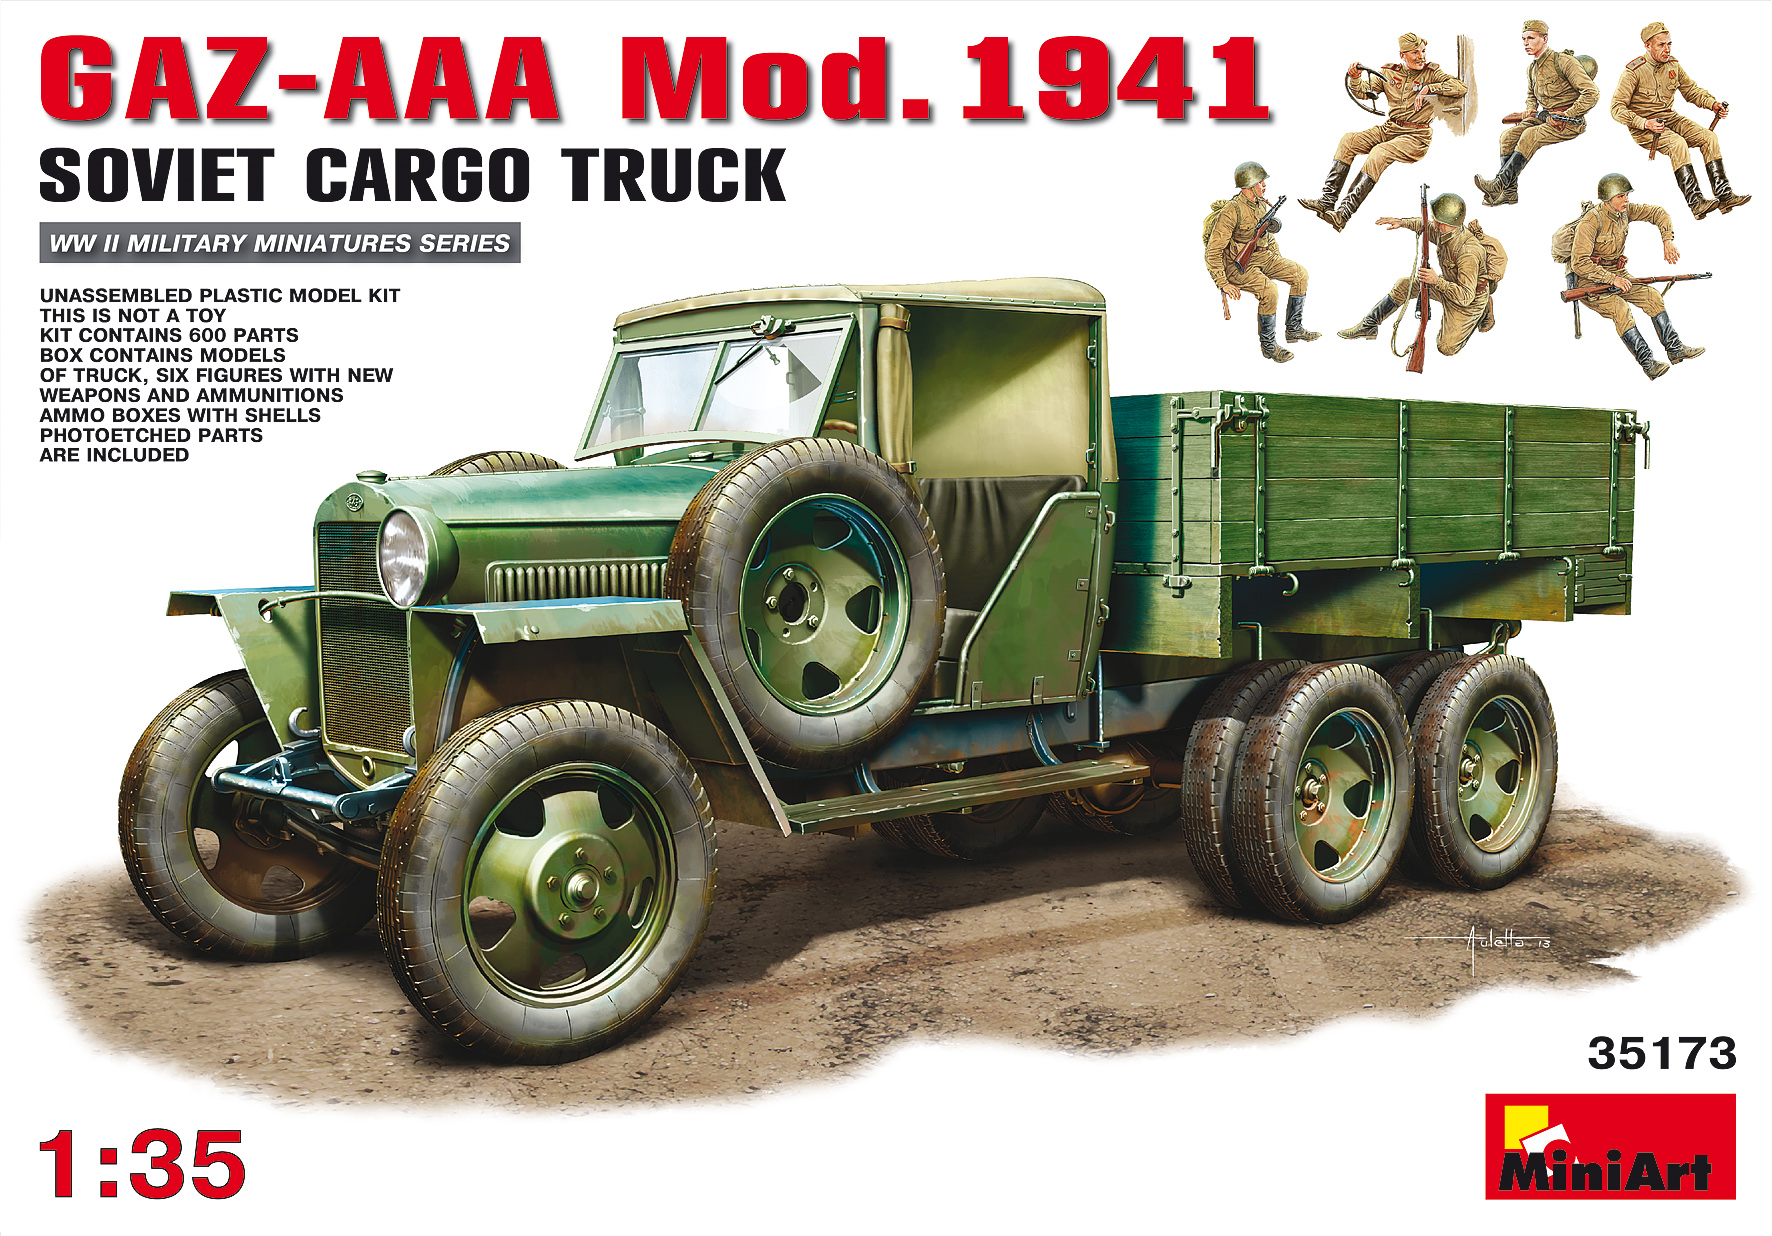 MiniArt 1:35 Scale GAZ-AAA Mod 1940 Cargo Truck Plastic Model Kit 